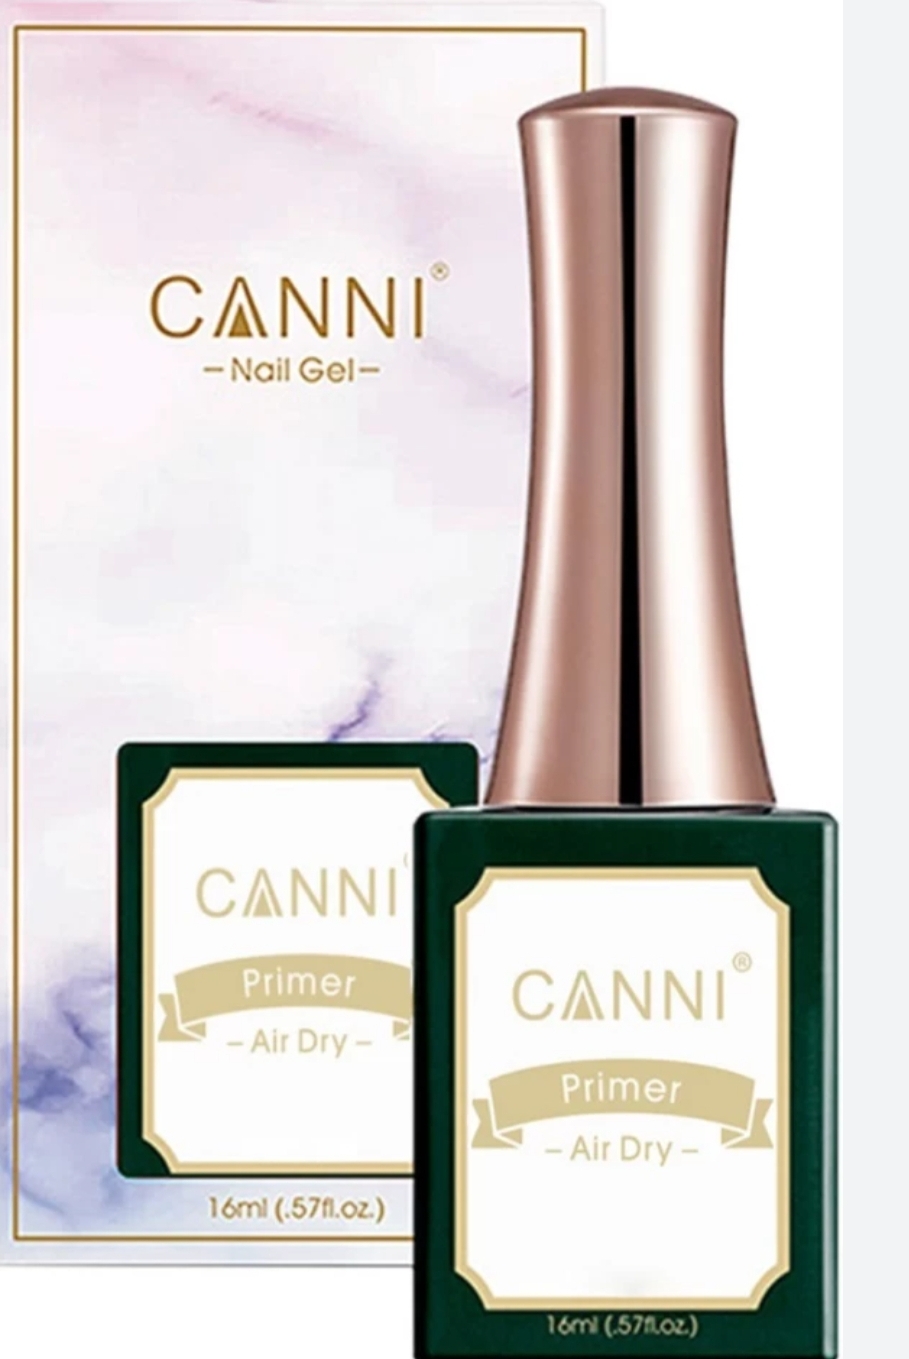 Canni nail gel primer air dry 16ml